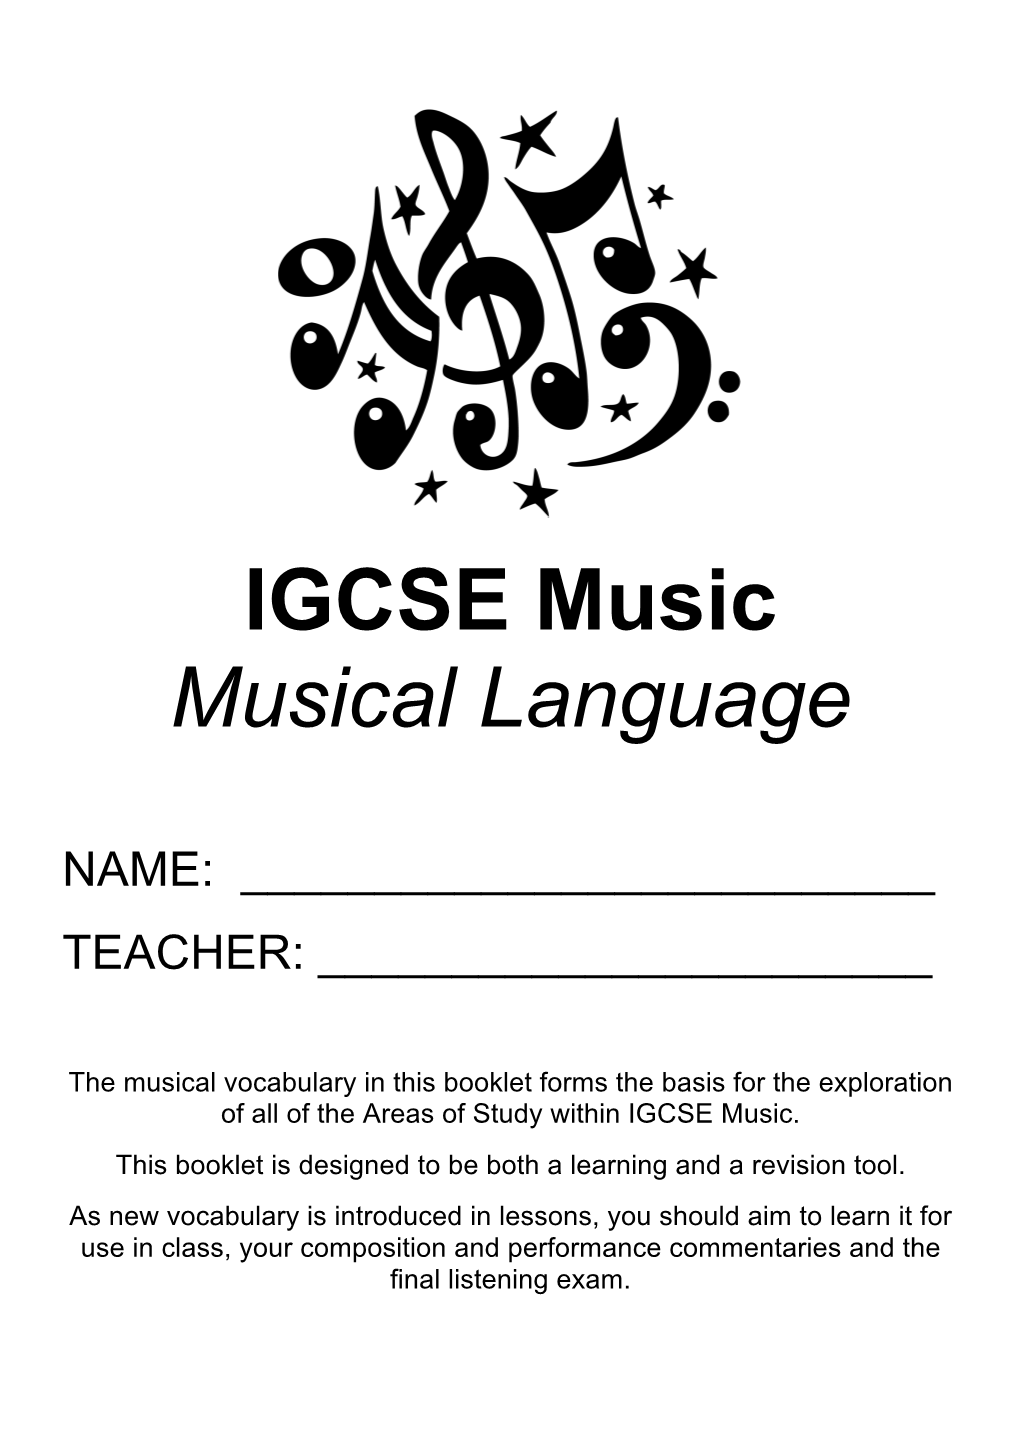 IGCSE Music Musical Language